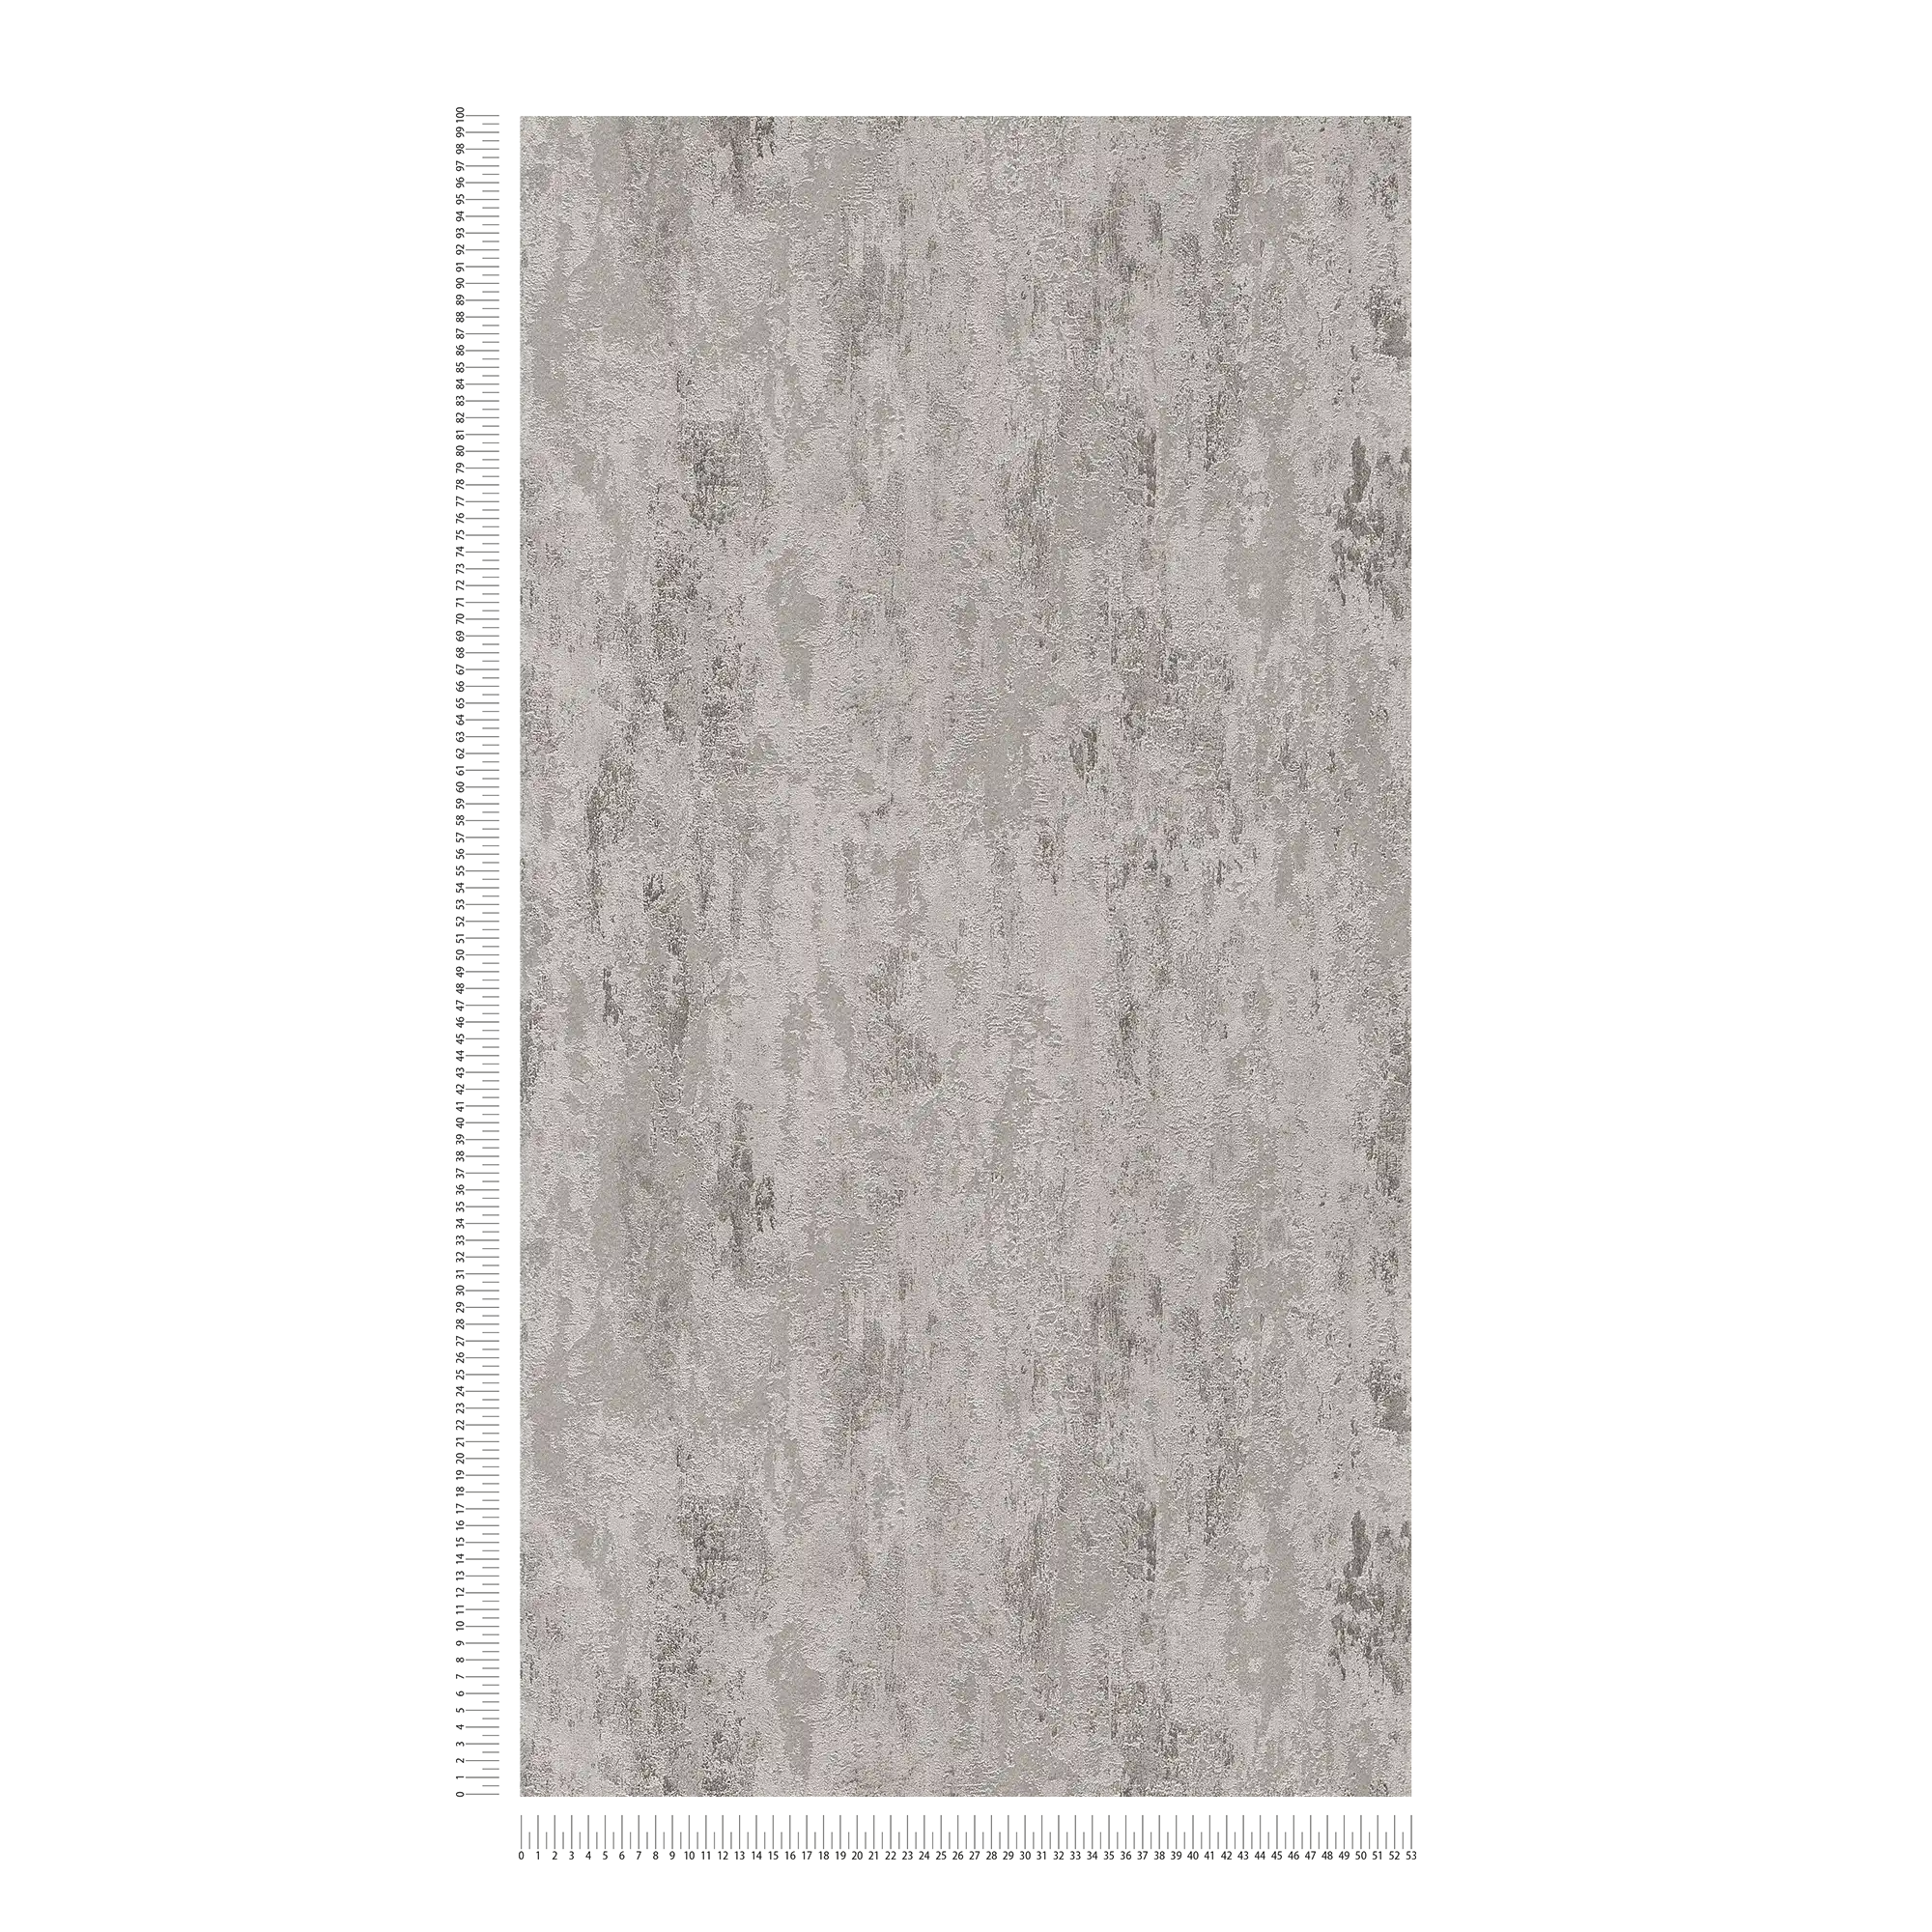             Roestvast vliesbehang met structuurpatroon - grijs, zilver
        